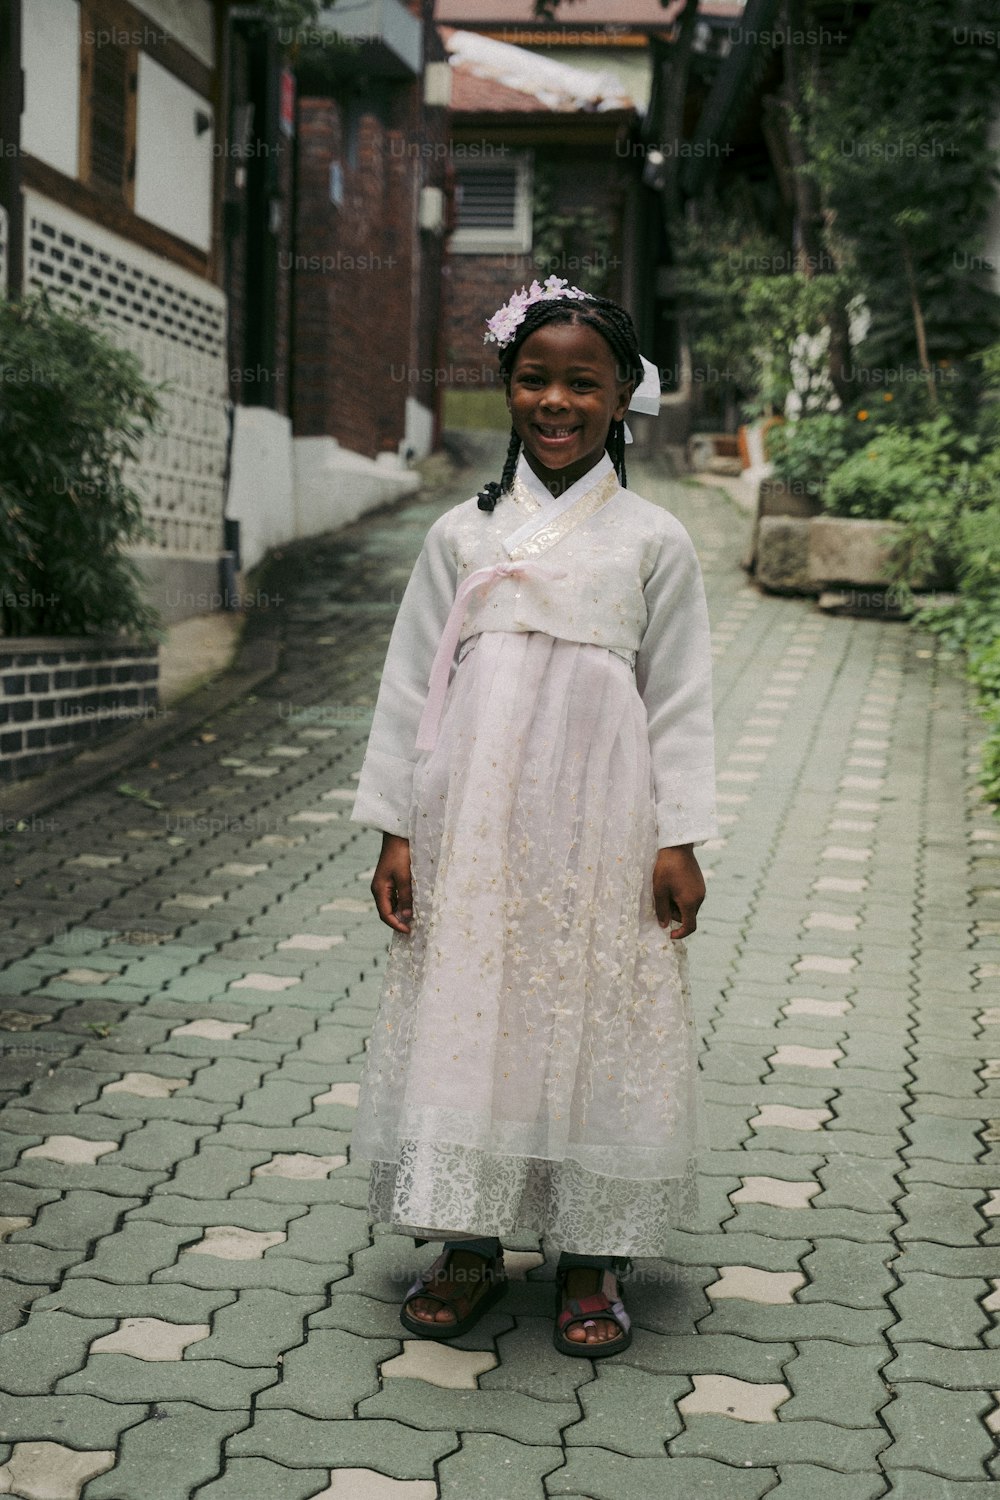 Una ragazza in un vestito bianco in piedi su una strada di ciottoli